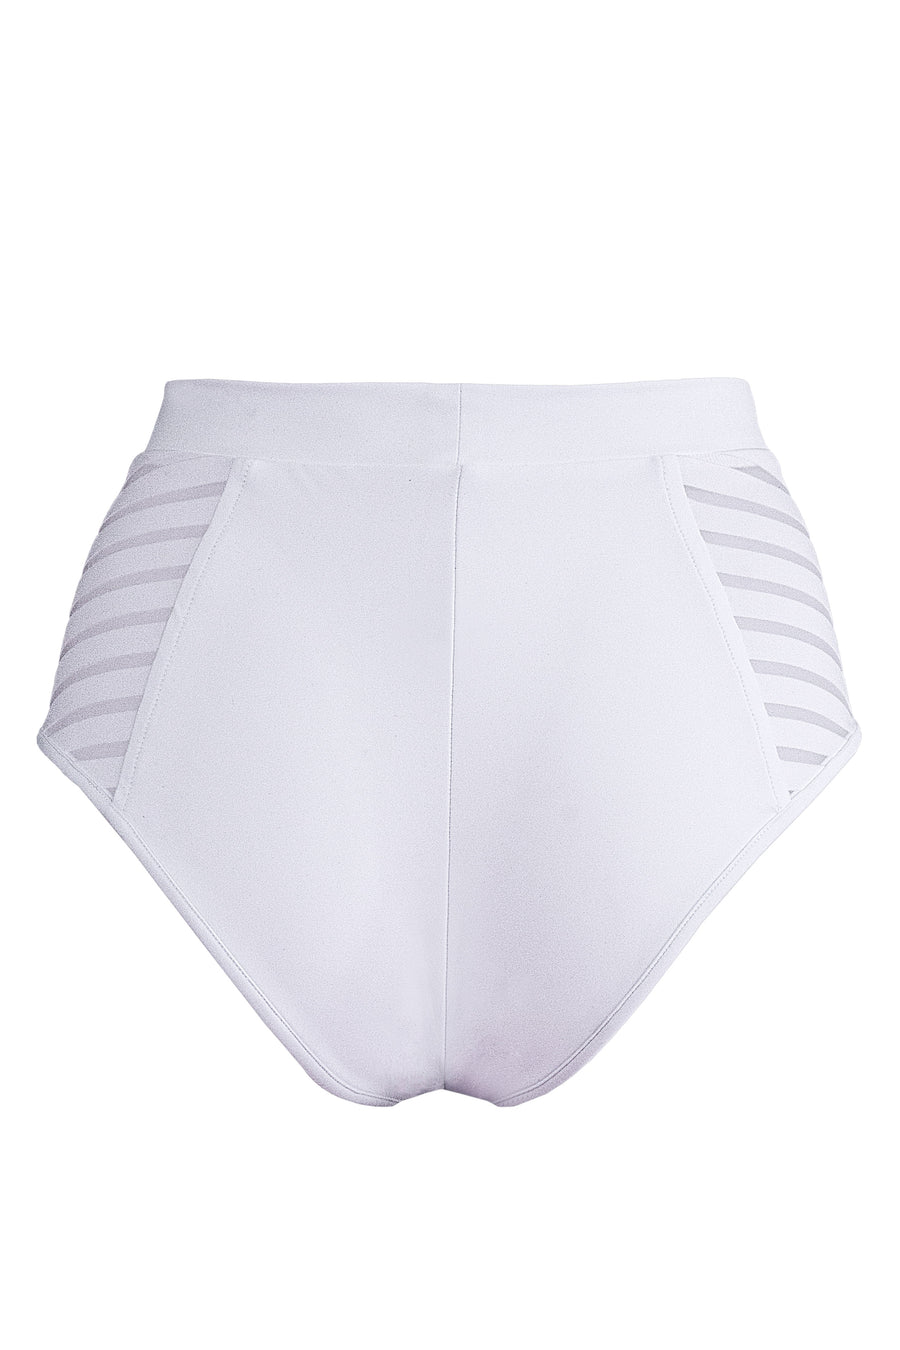 High waisted Stripe panel Bottom / High waist Stripe / WHITE - EXES LINGERIE